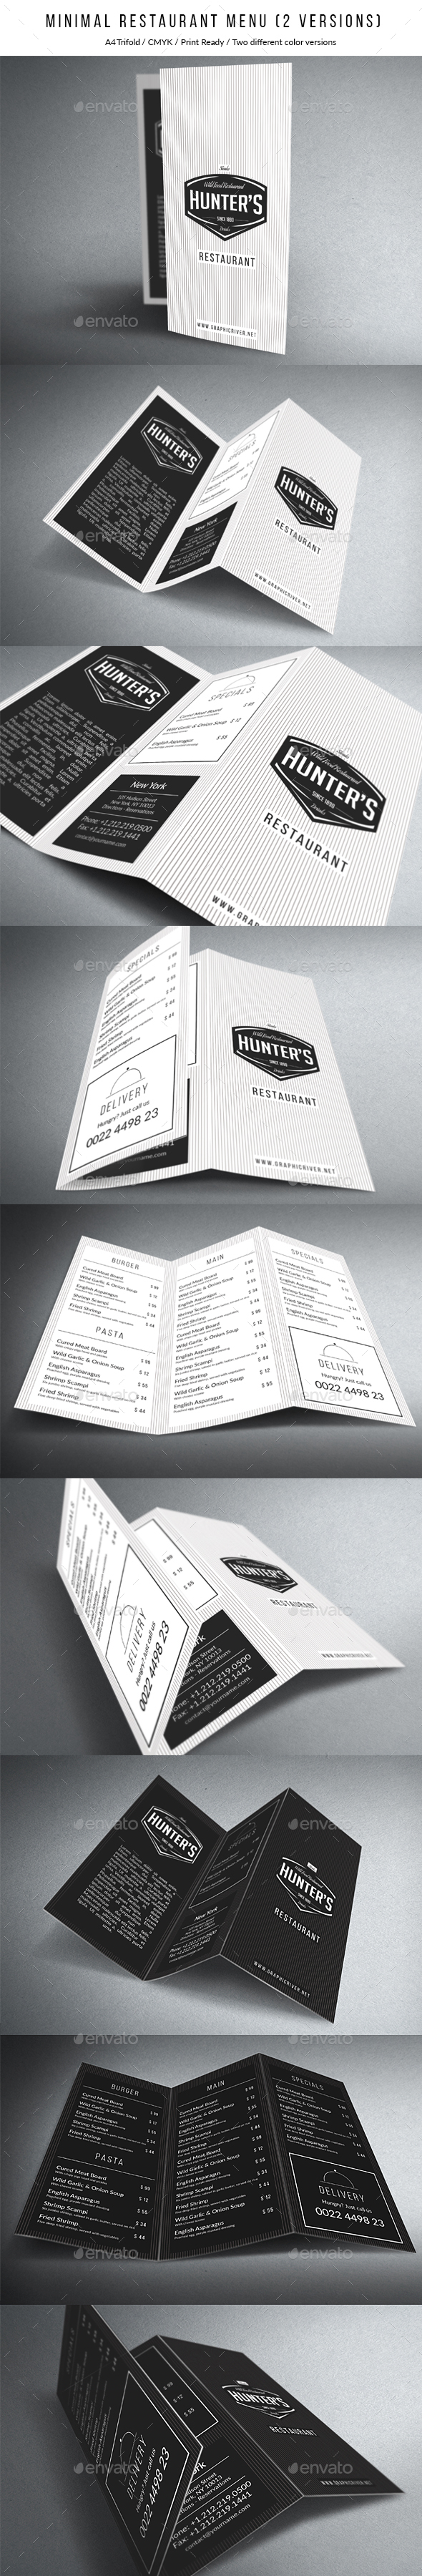 高端极简的A4尺寸三折页食物菜单模板 Minimal A4 Trifold Menu – 2 Versions [psd]插图